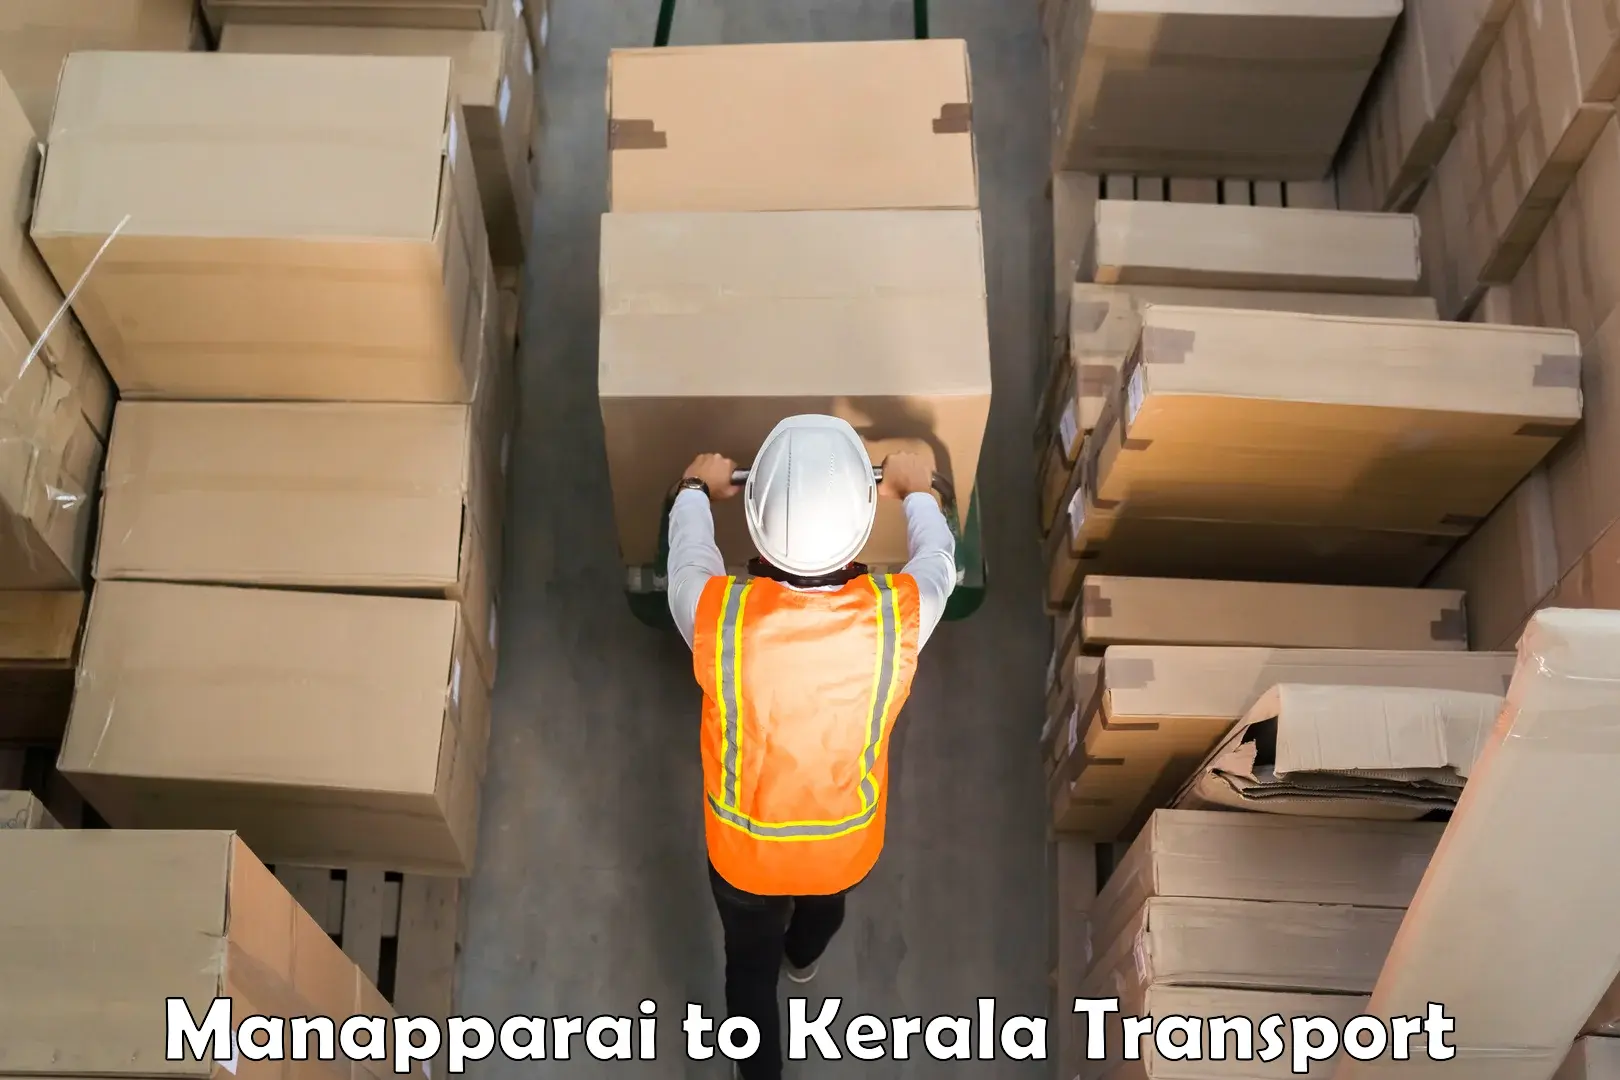 Truck transport companies in India Manapparai to Kerala University Thiruvananthapuram